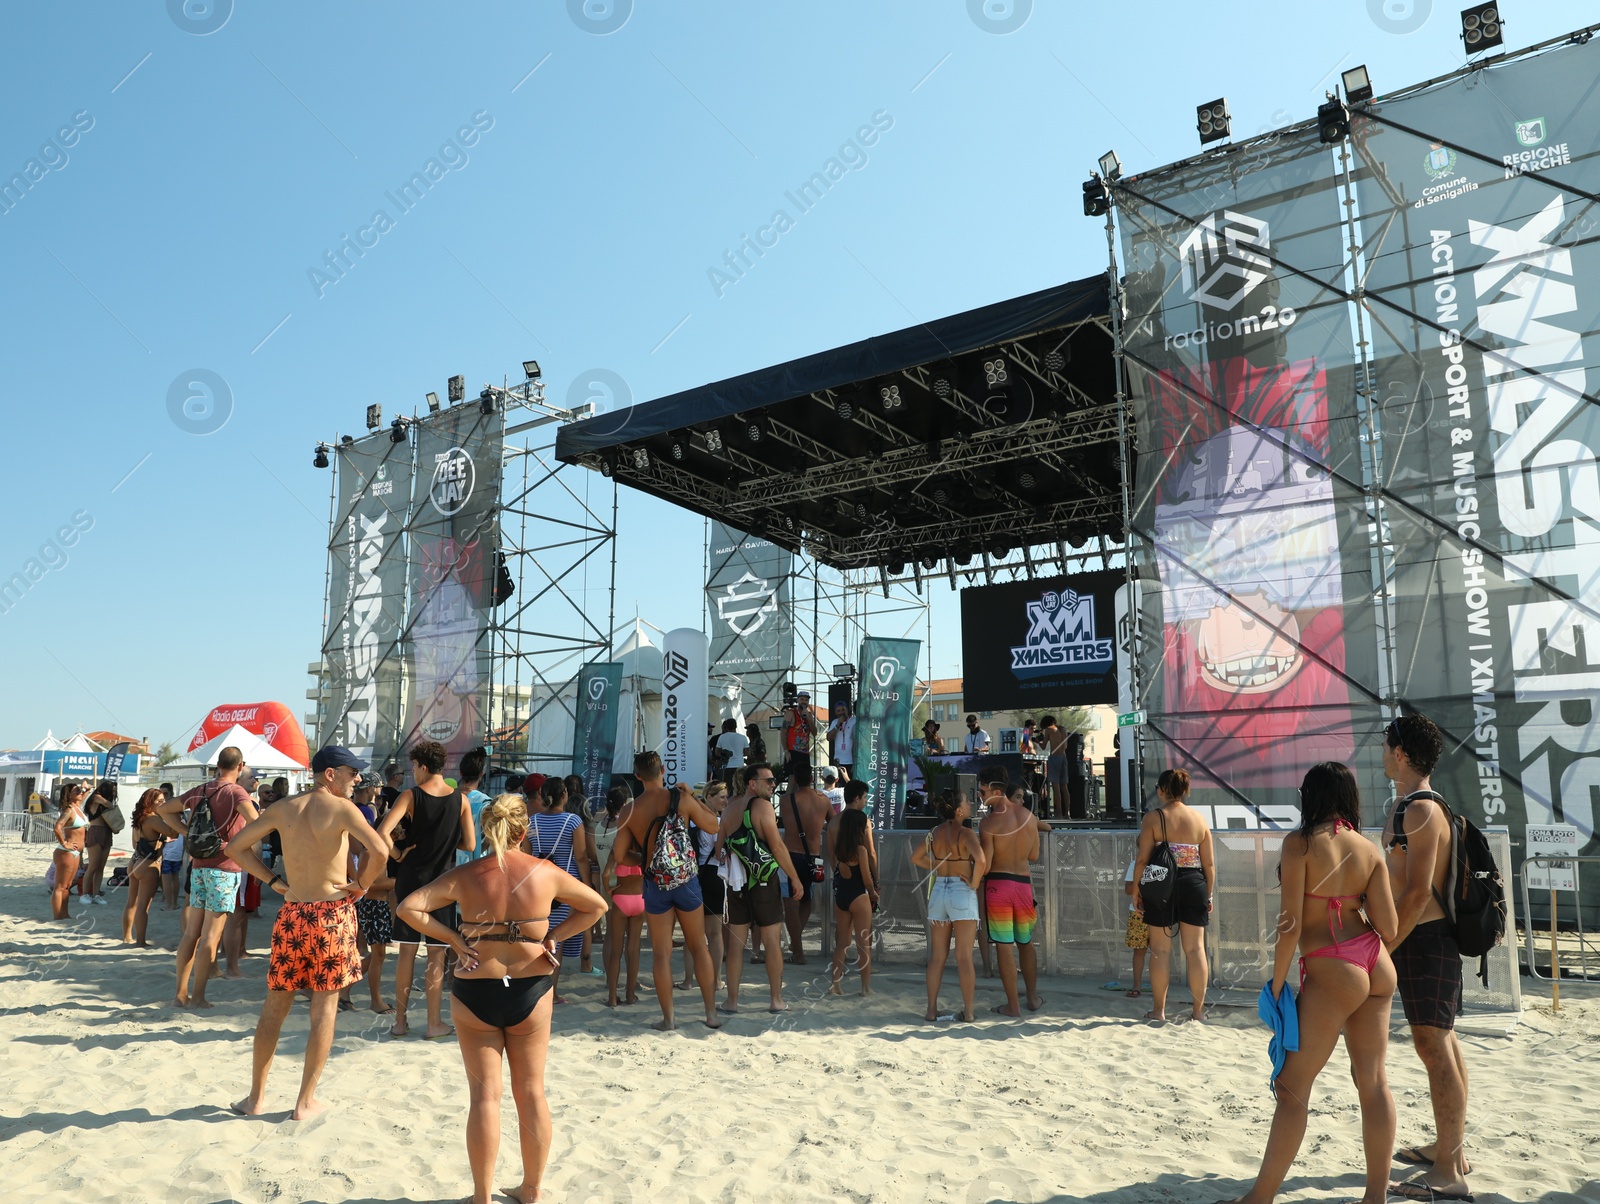 Photo of SENIGALLIA, ITALY - JULY 22, 2022: People enjoying music festival on beach